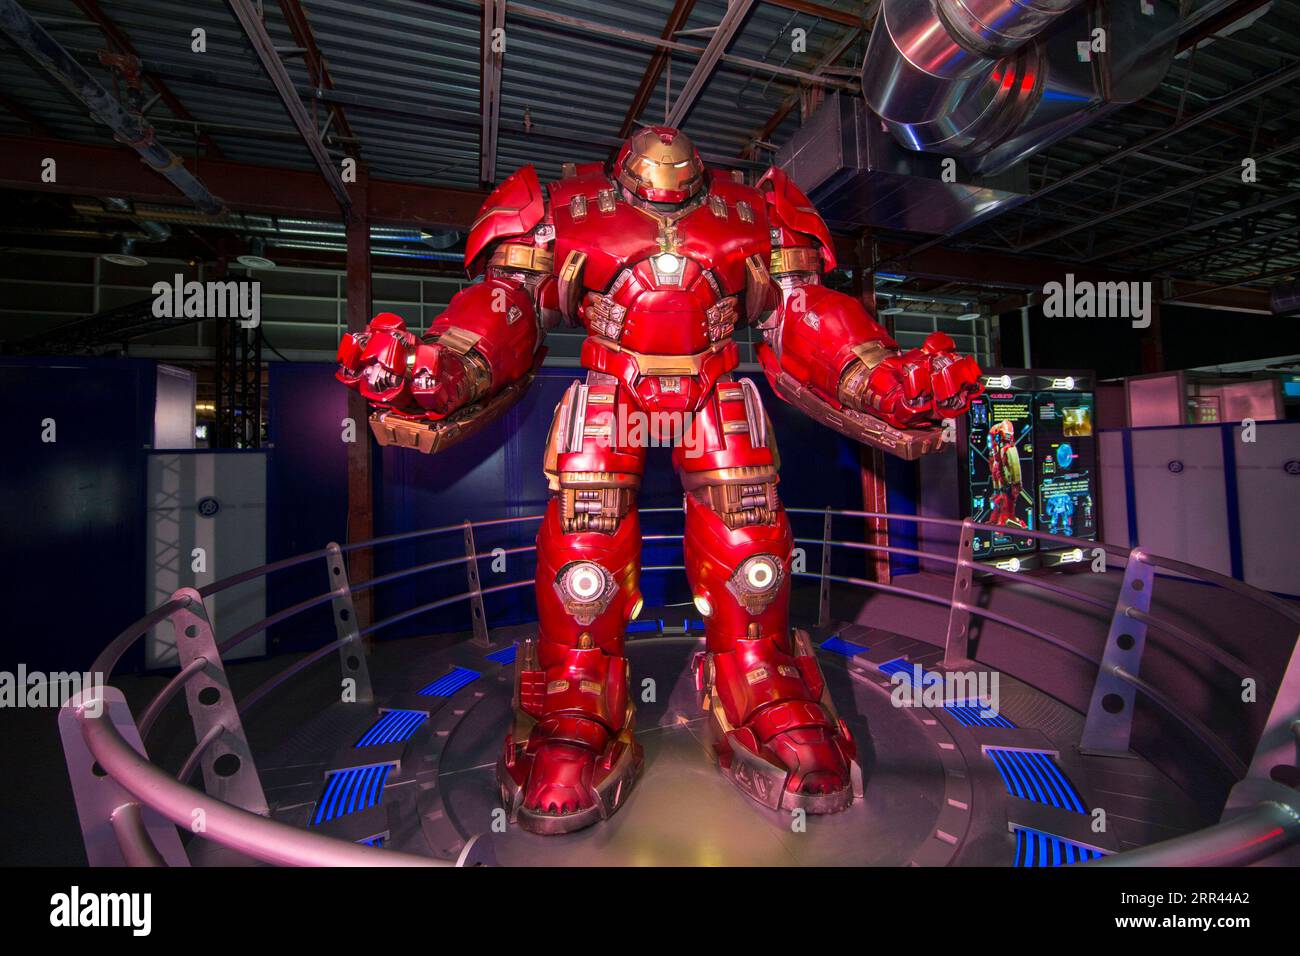 201119 -- TORONTO, le 19 novembre 2020 -- Une armure Hulkbuster est vue à l'exposition Marvel Avengers S.T.A.T.I.O.N. lors de l'avant-première médiatique au Yorkdale Shopping Center à Toronto, Canada, le 19 novembre 2020. Présentant l’univers cinématographique Marvel des super-héros, l’exposition sera ouverte au public du 20 novembre 2020 au 31 janvier 2021. Photo de /Xinhua CANADA-TORONTO-MARVEL AVENGERS-EXHIBITION ZouxZheng PUBLICATIONxNOTxINxCHN Banque D'Images